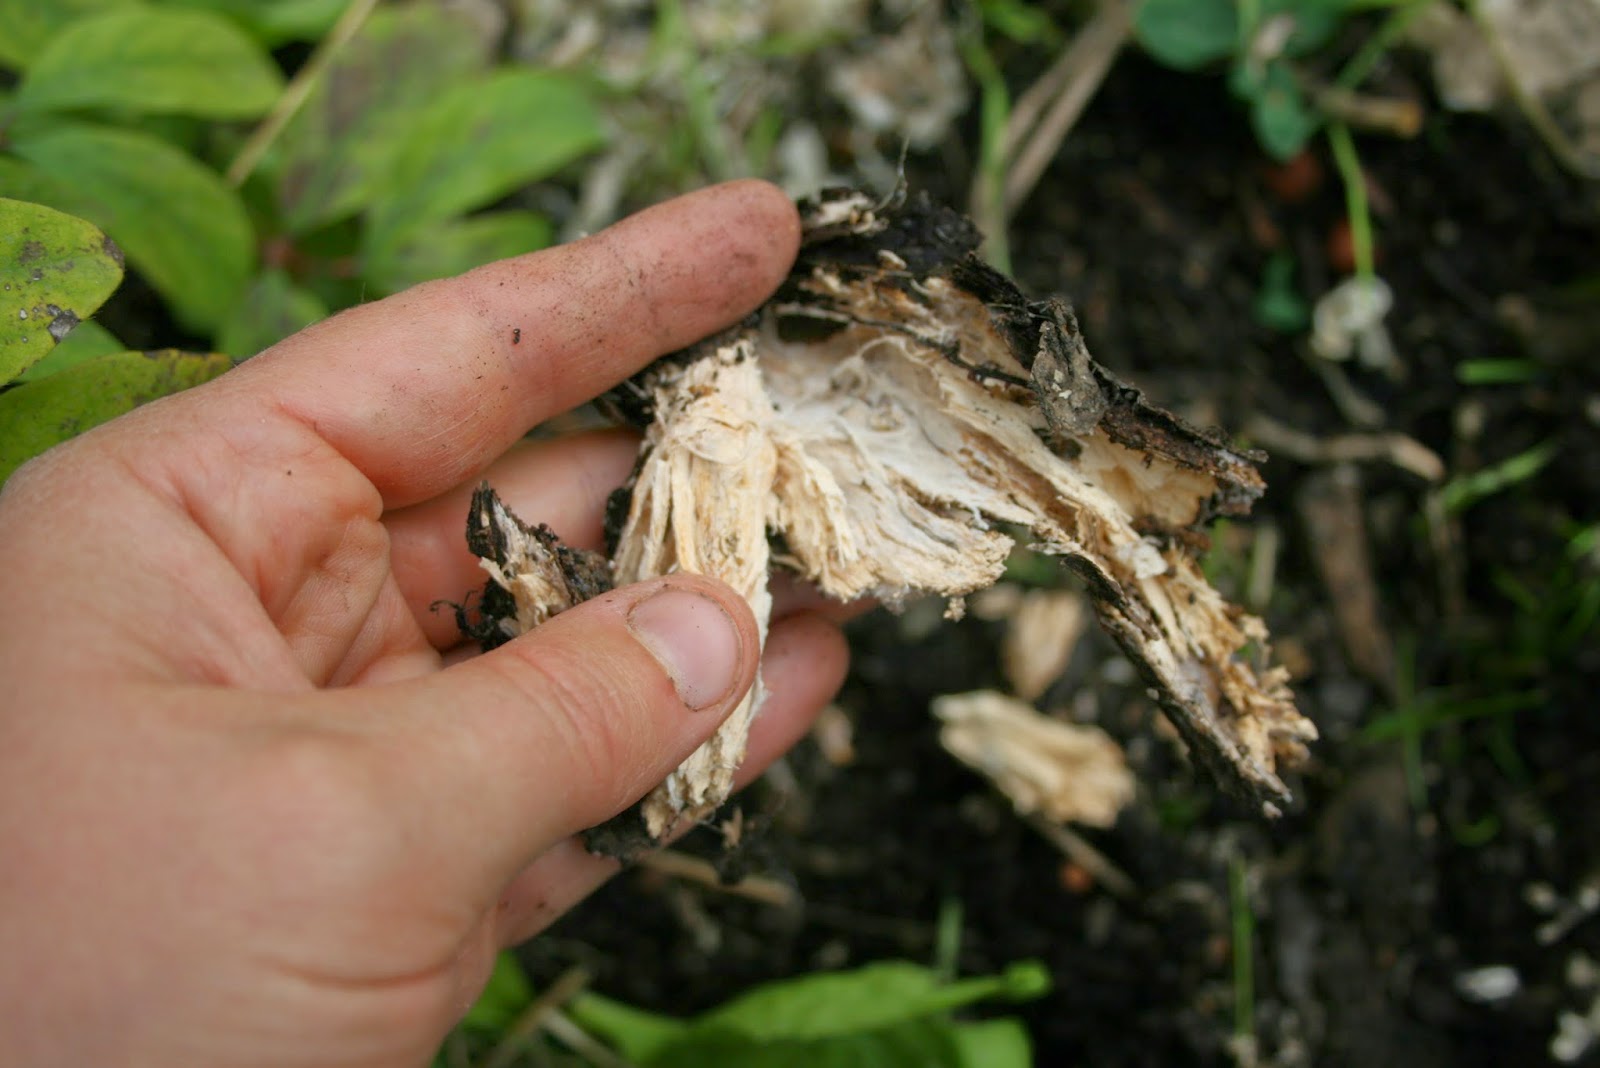 Hawlik Pilzbrut - Culture de champignons Stropharia rugosoannulata pour  cultiver soi-même dans son jardin - un jeu d'enfant de récolter des  champignons frais - Kit champignons à faire pousser : : Jardin